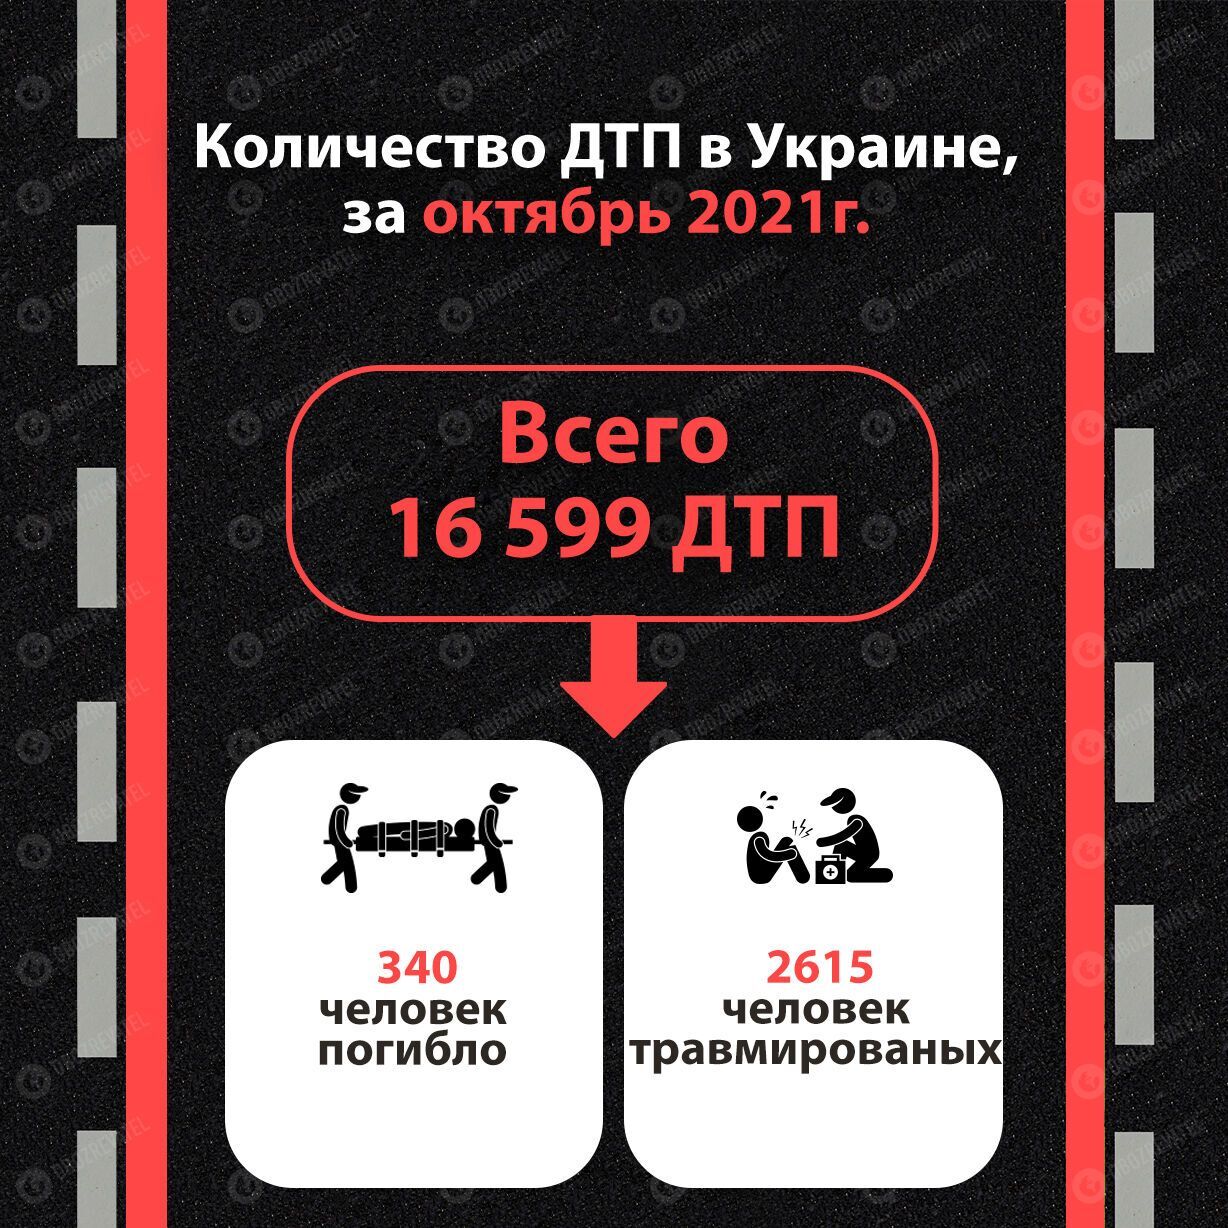 Количество ДТП в Украине за октябрь 2021 года